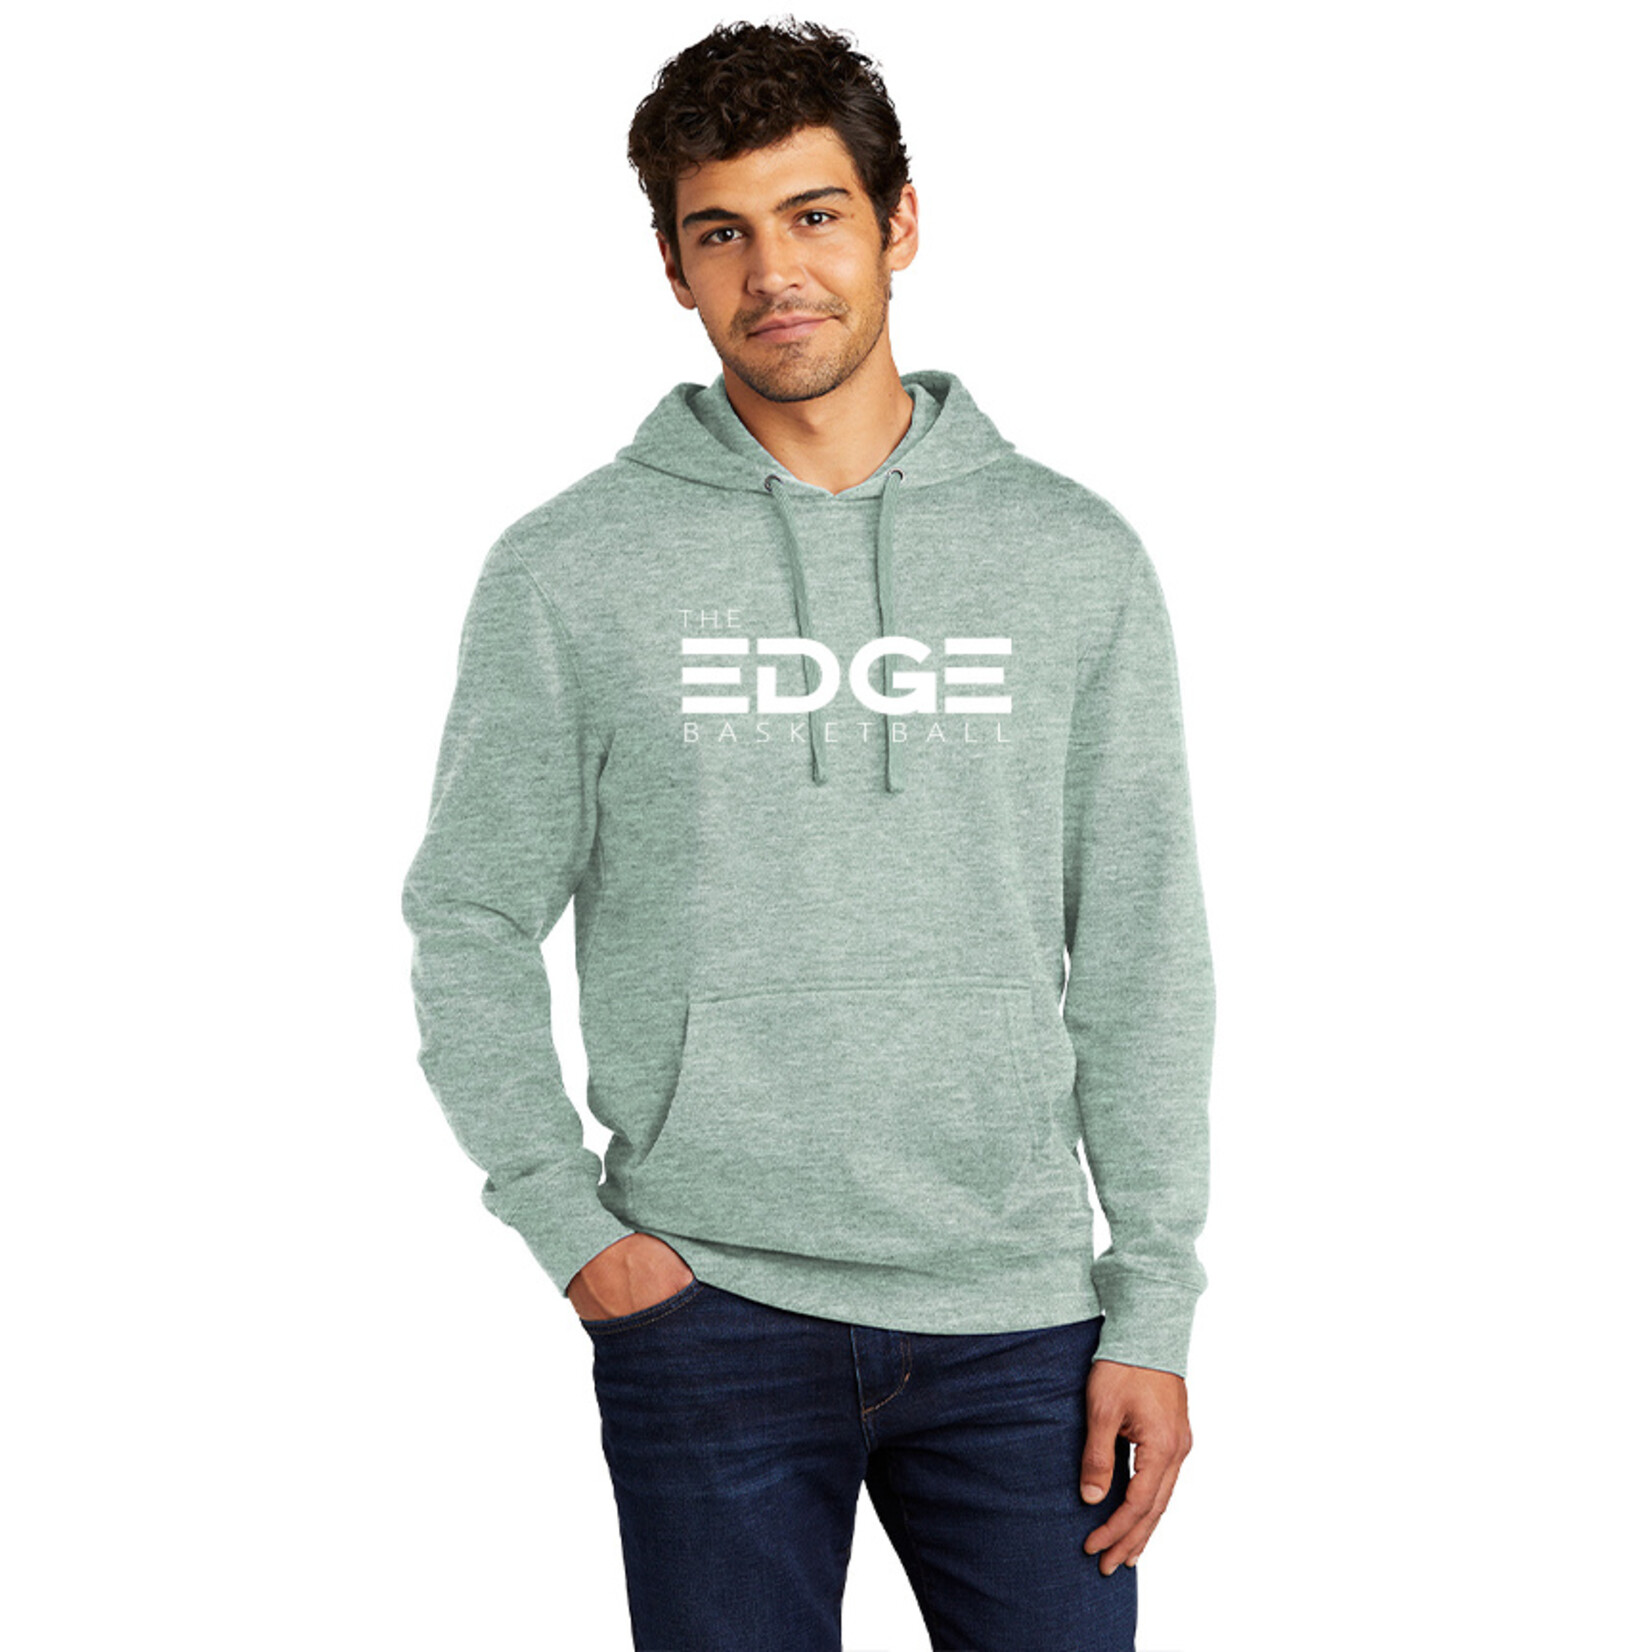 THE EDGE Adult Hooded Sweatshirt